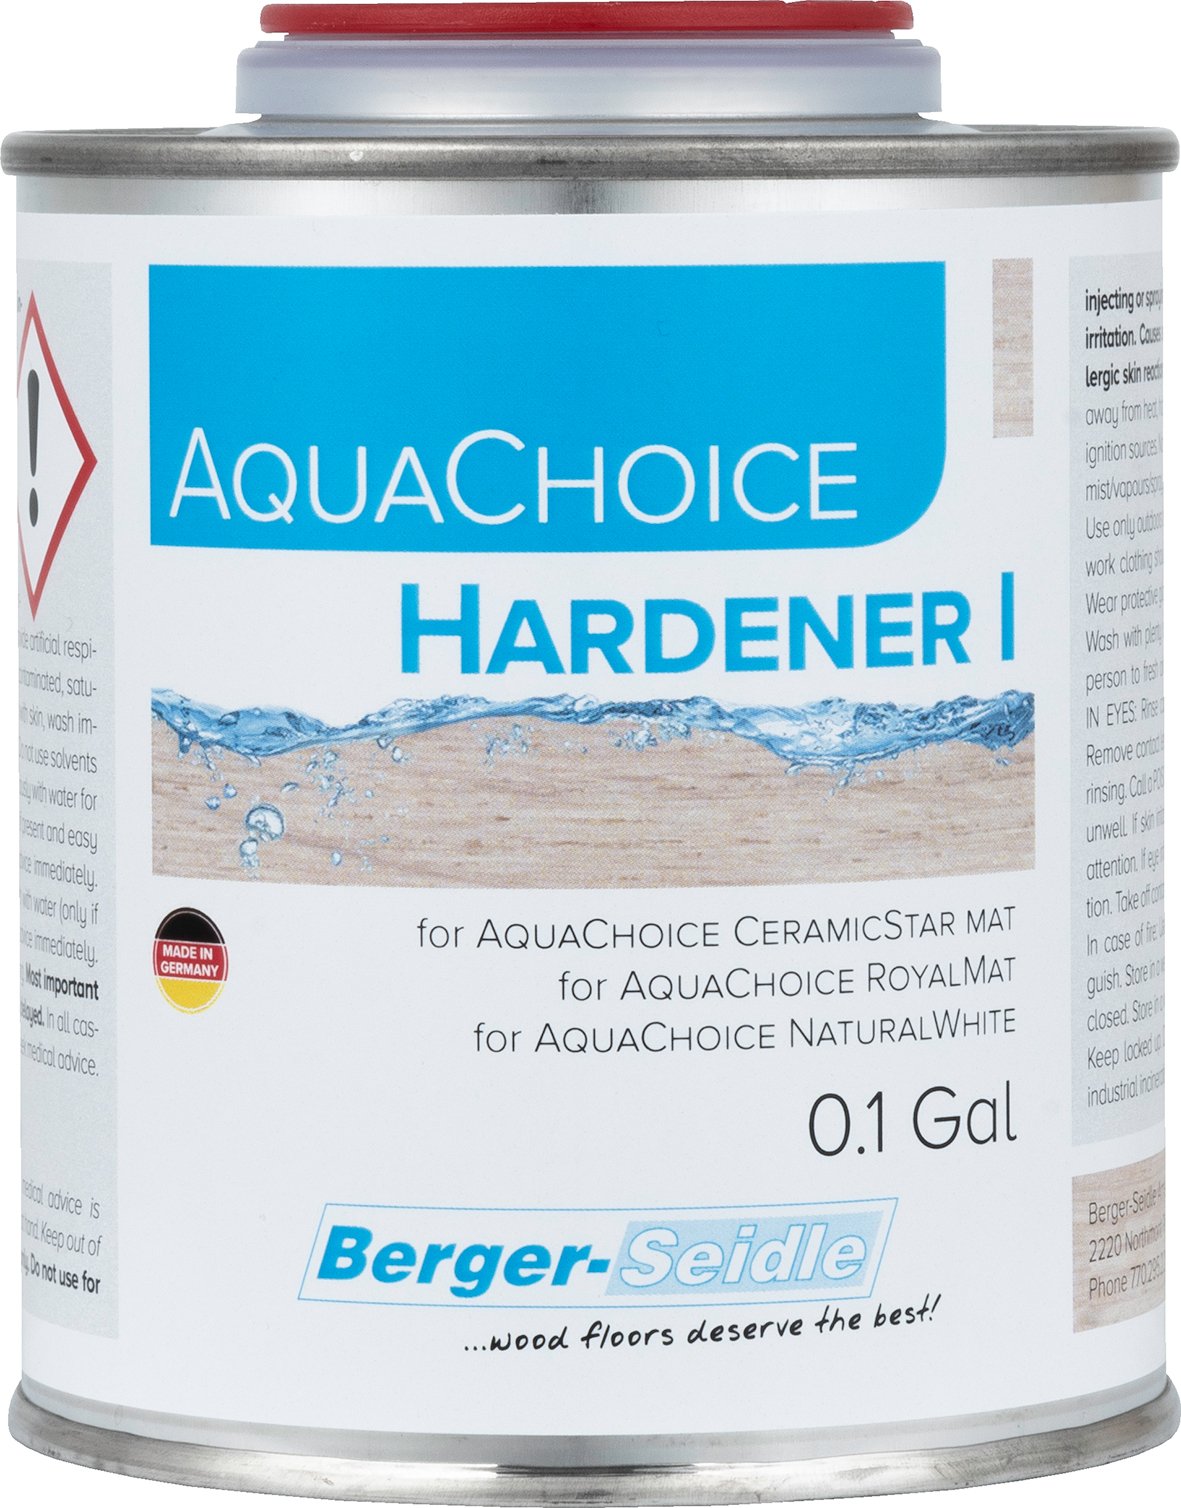 AquaChoice Hardener I 0.1Gal rgb.jpg